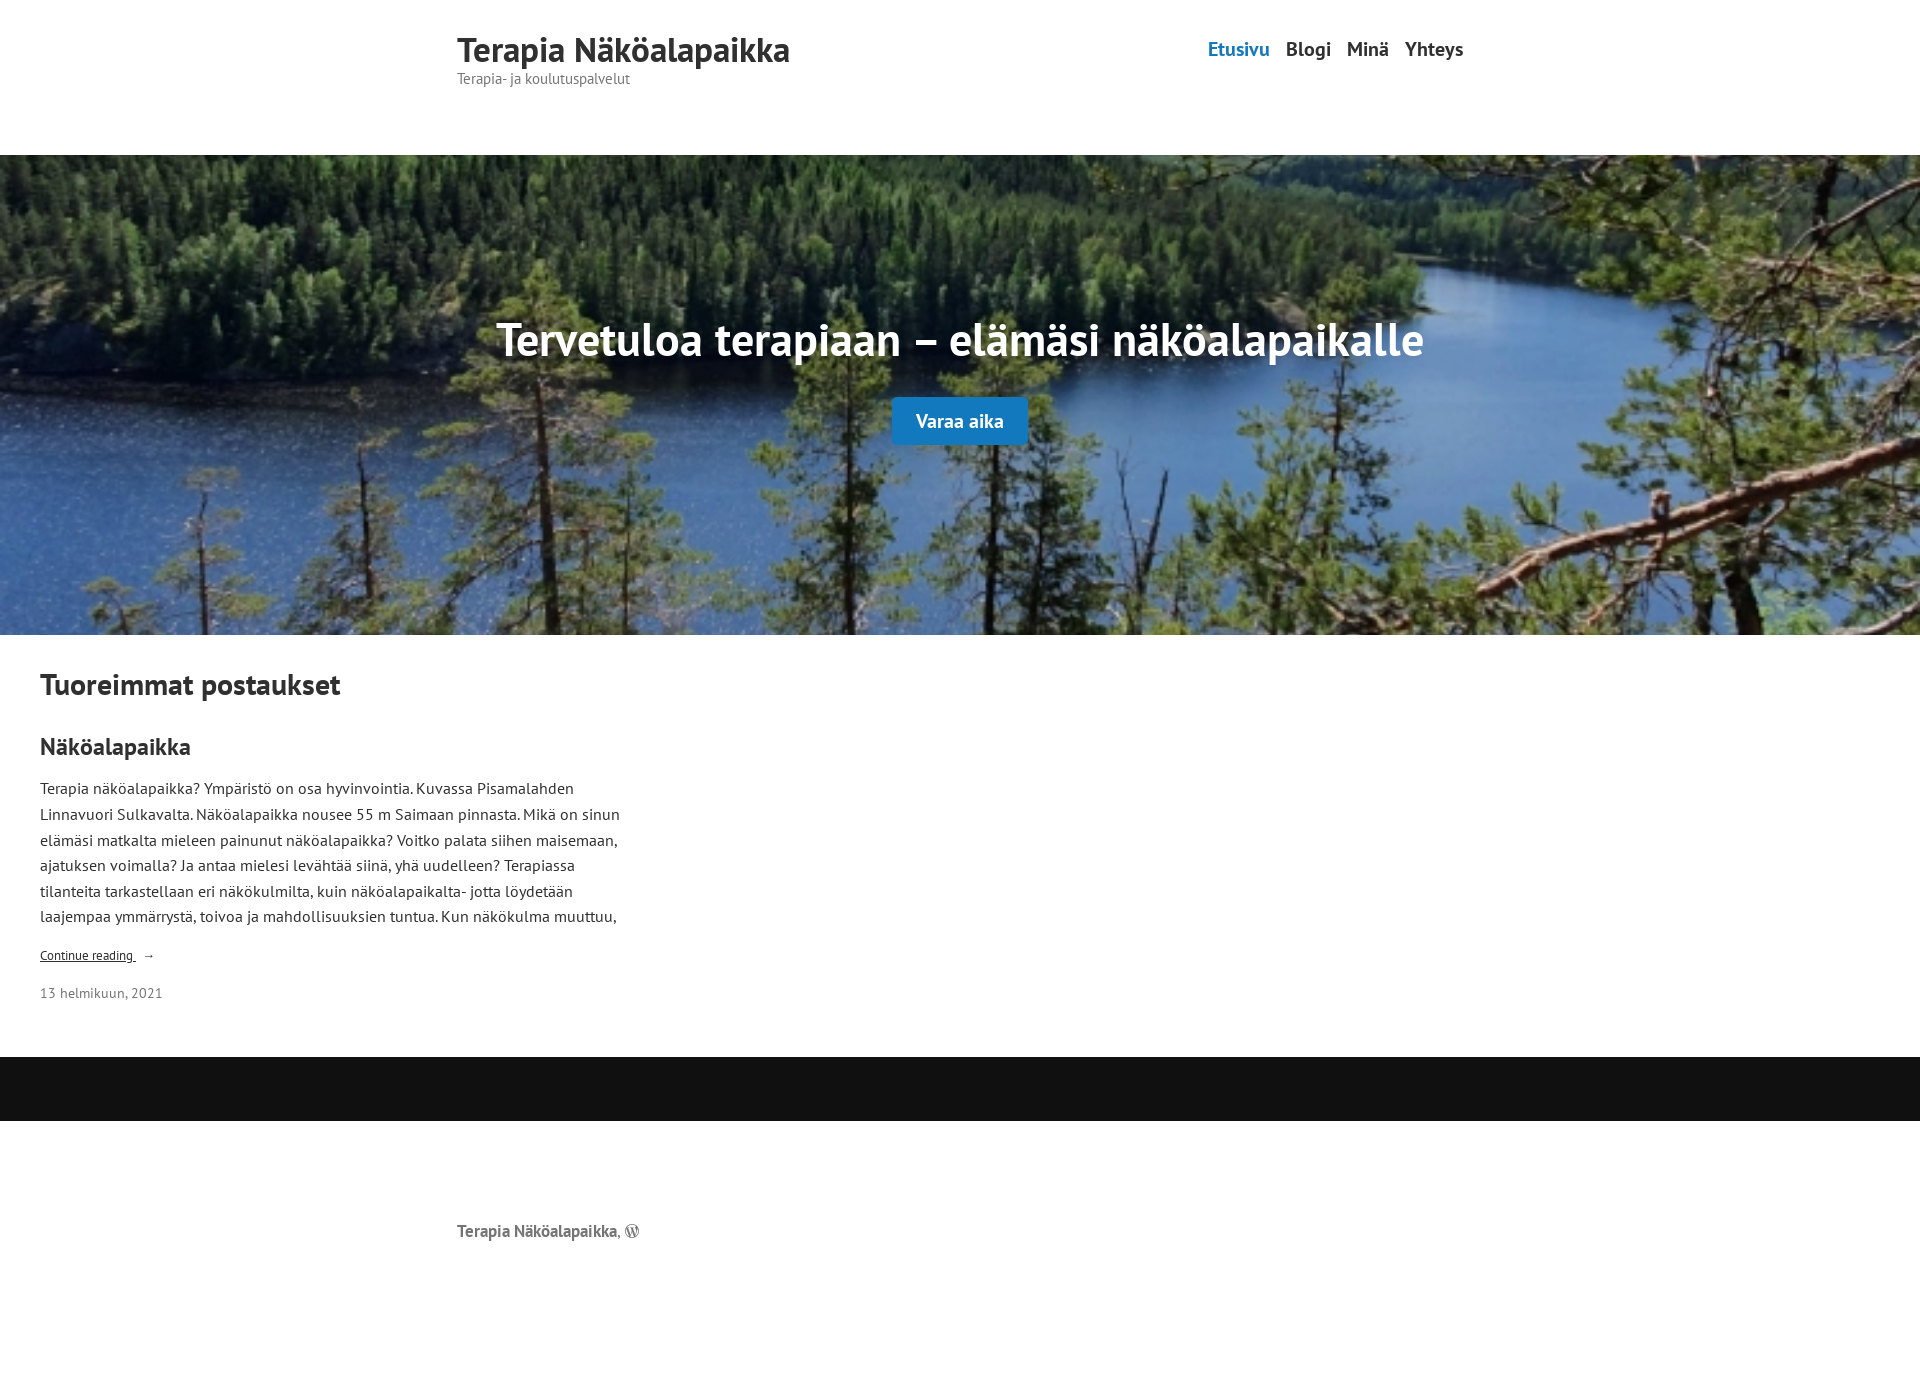 Skärmdump för terapianakoalapaikka.fi